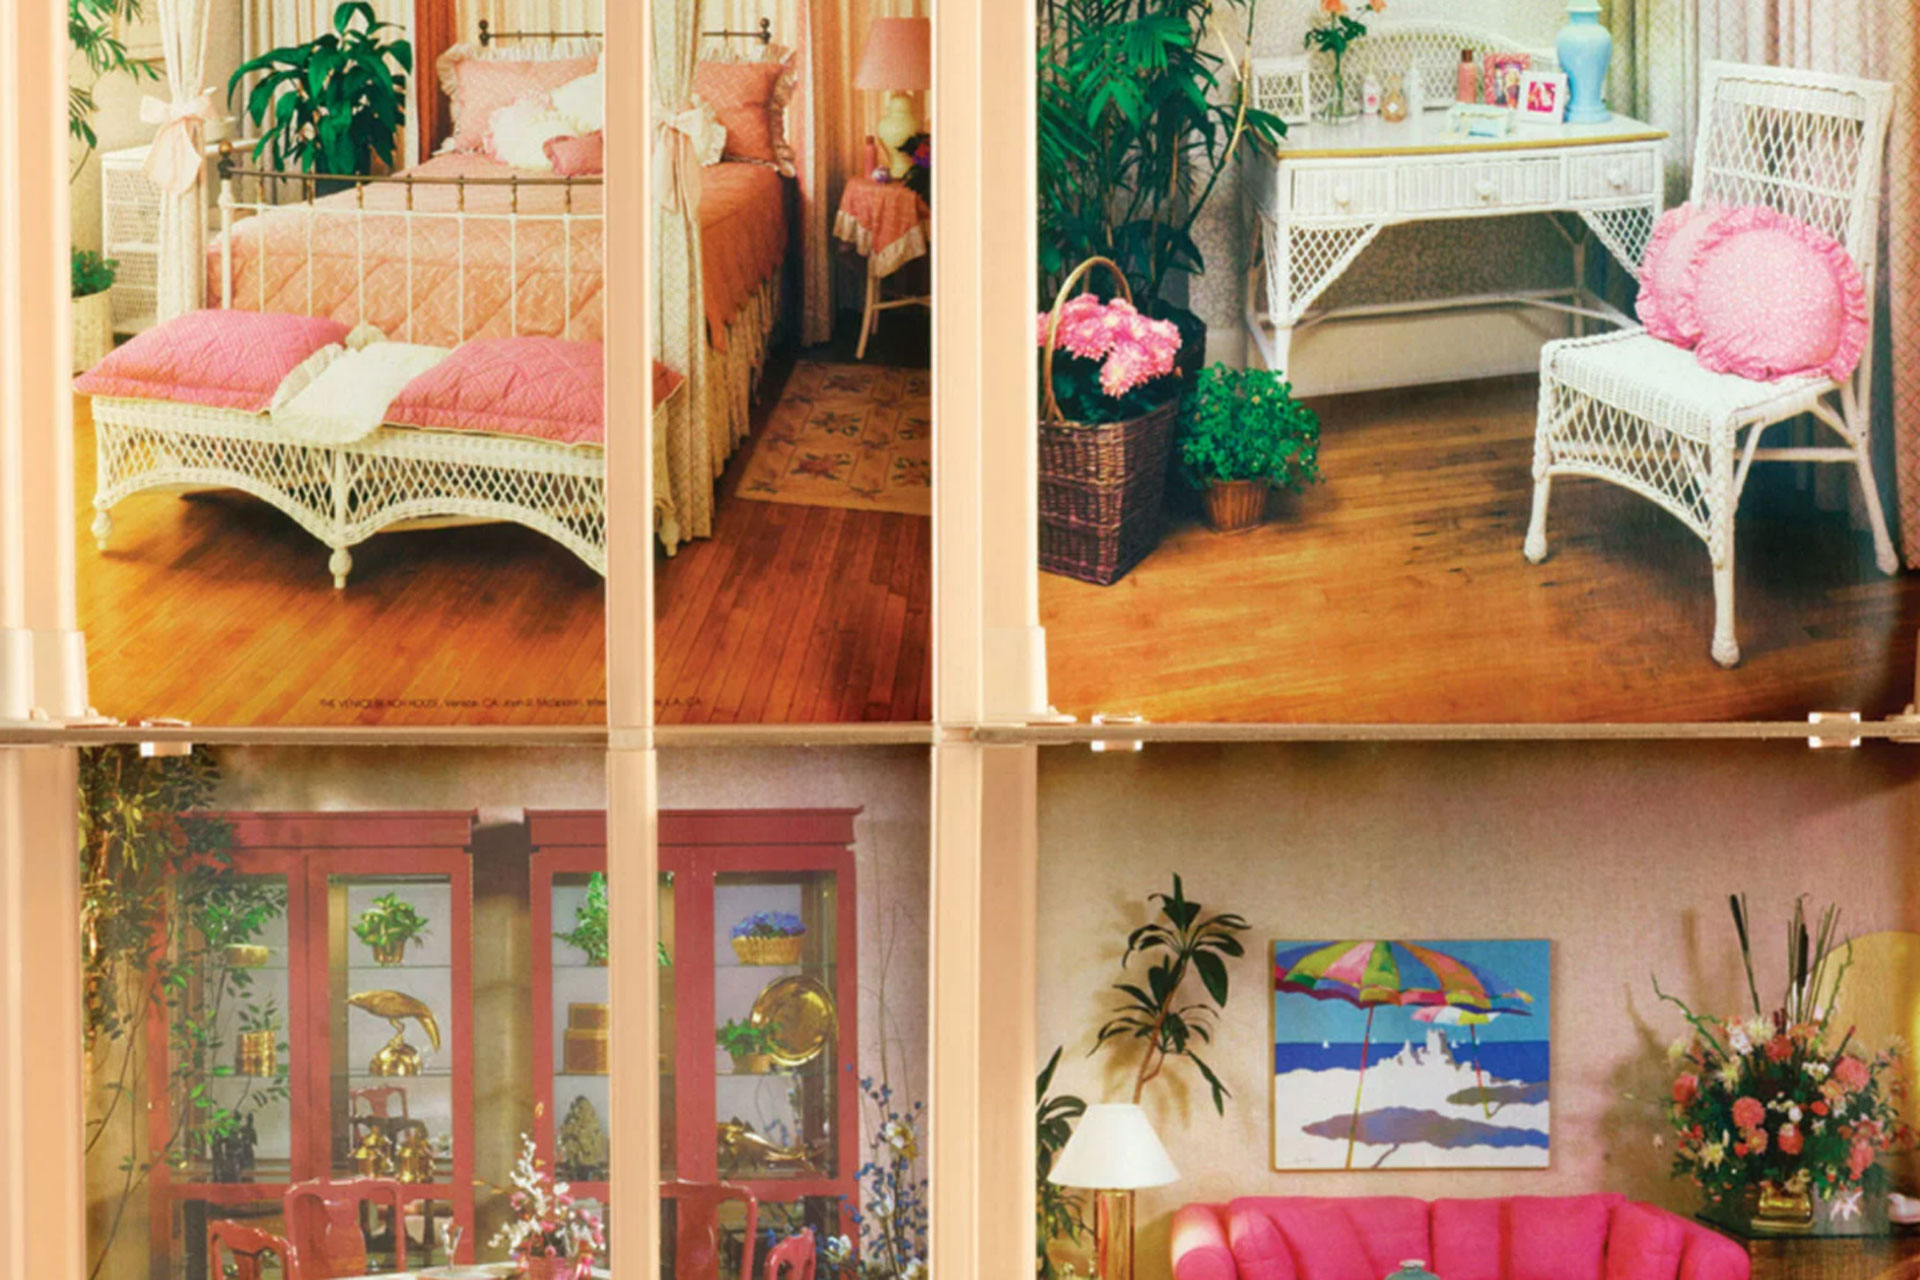 Barbiecore Interiors: Dreamy Barbie Home Décor